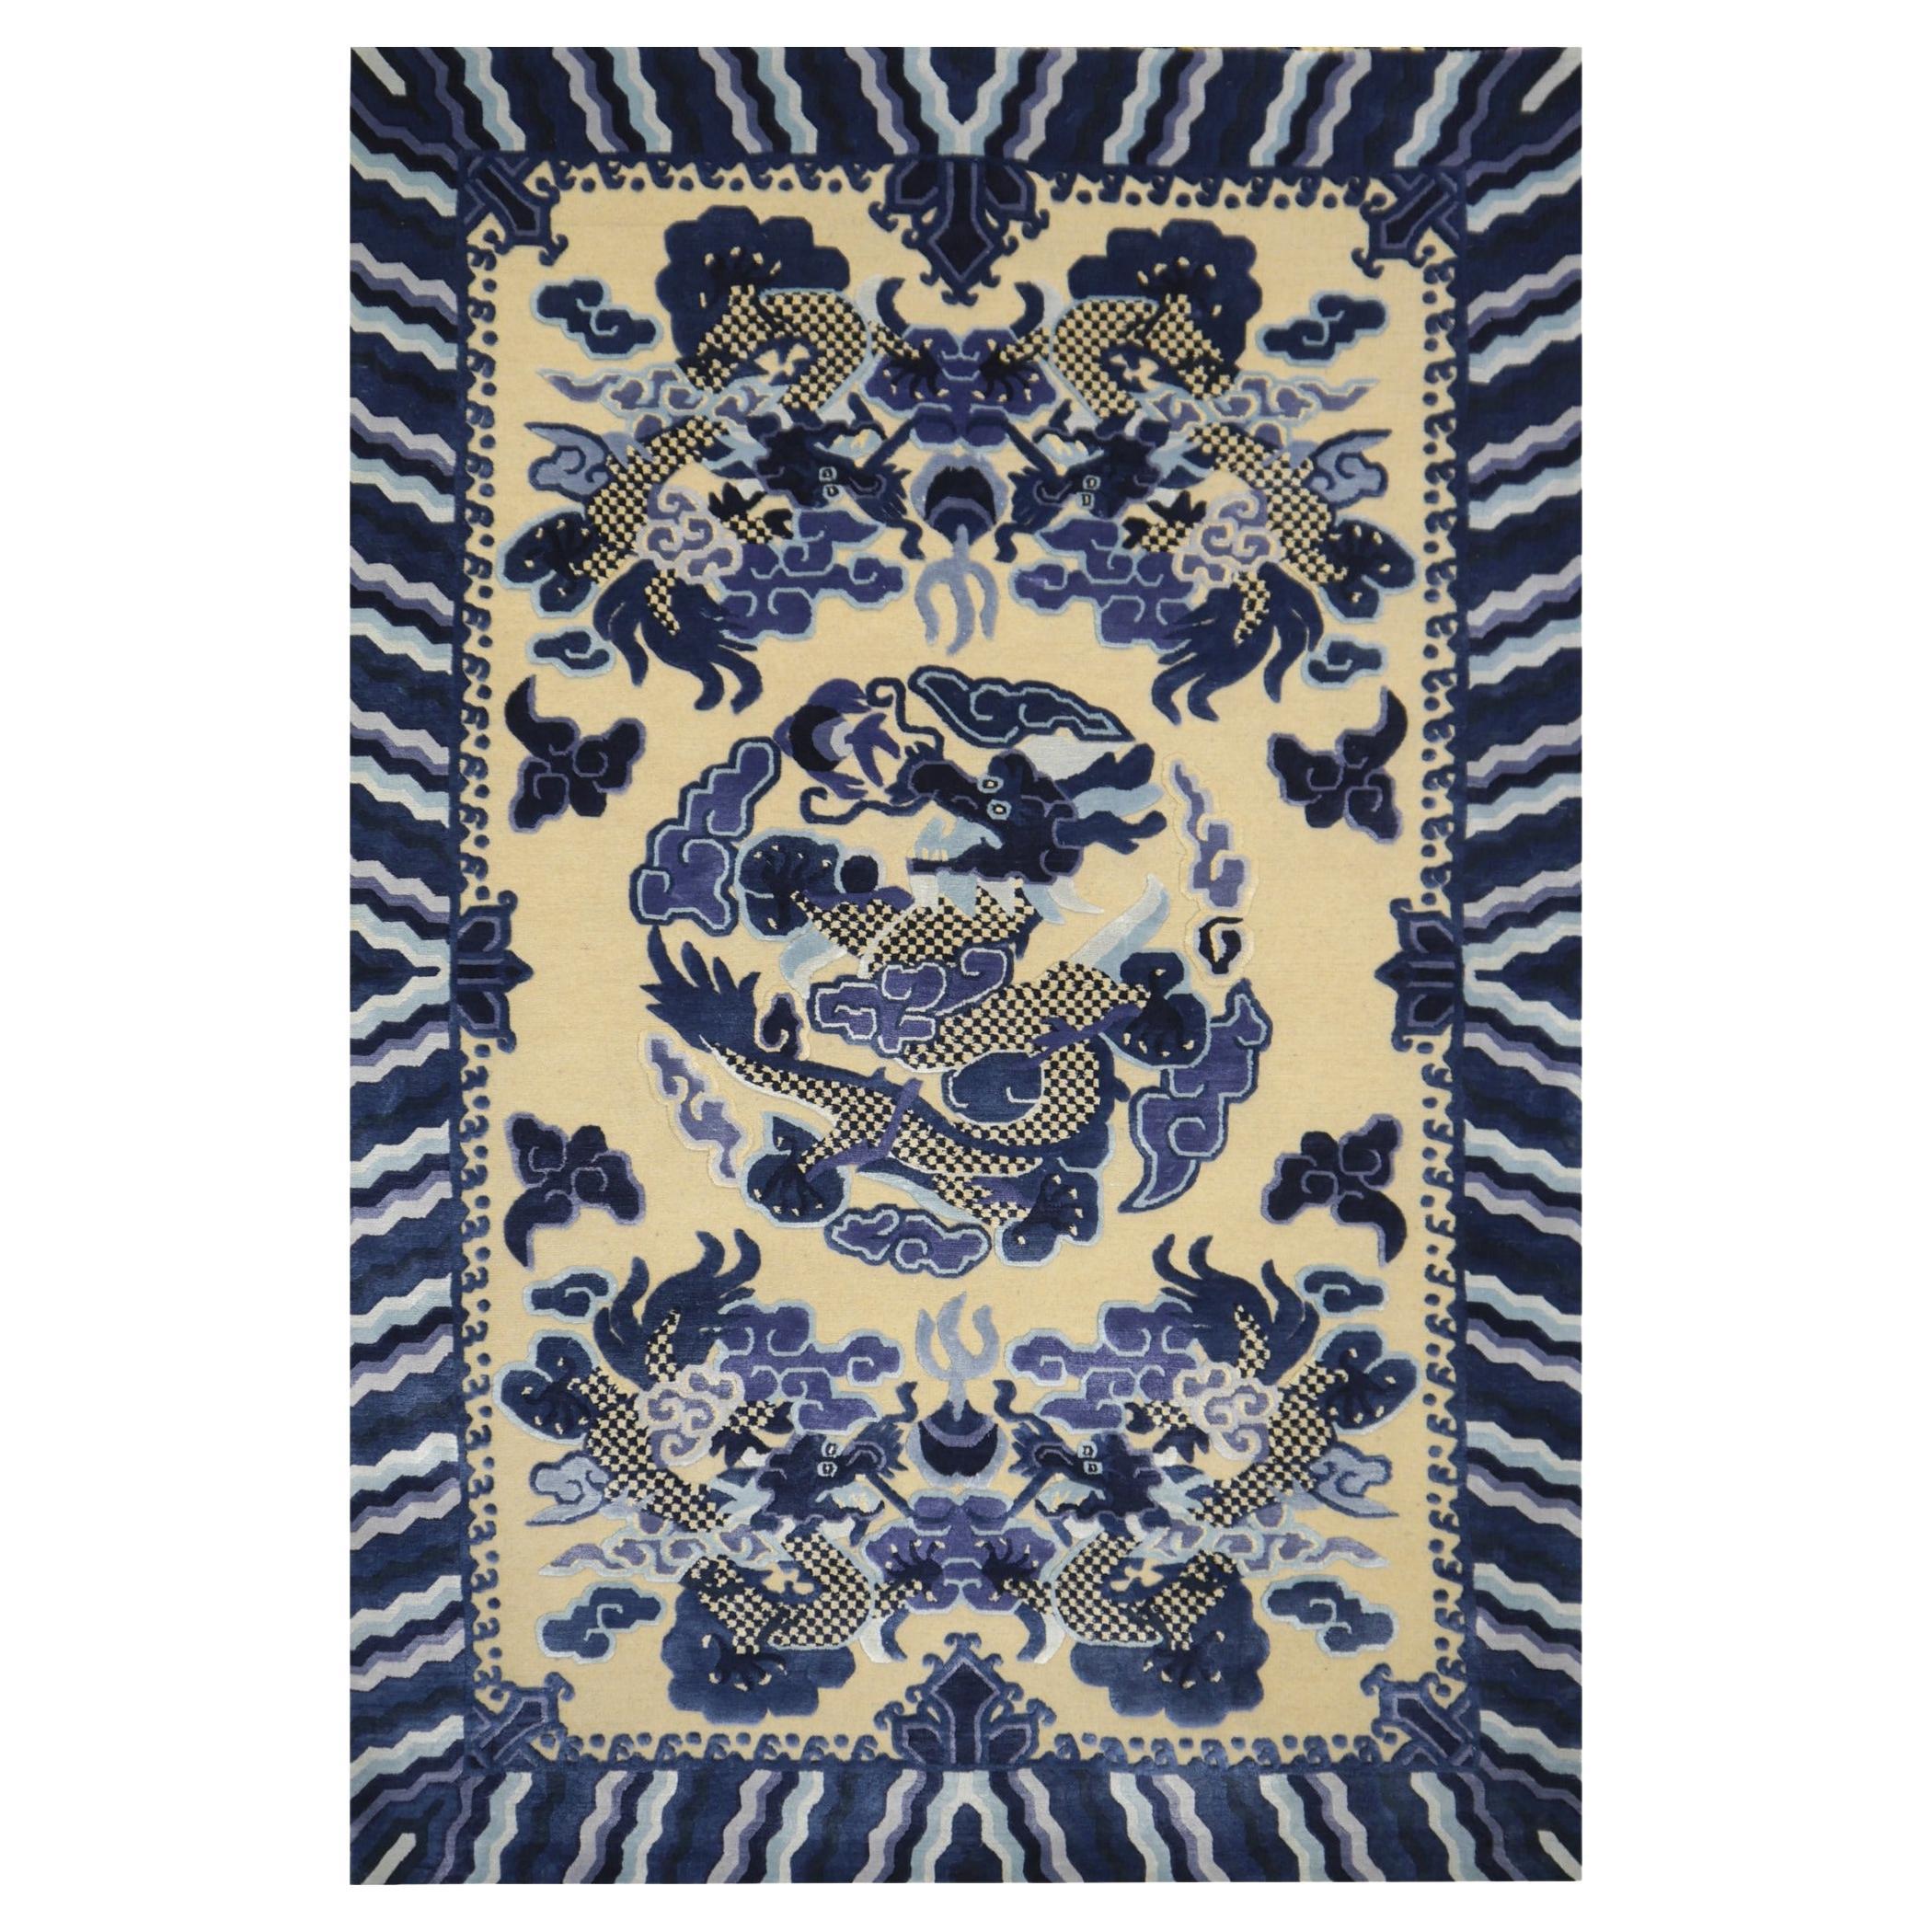 Chinesischer kaiserlicher Drachen-Teppich aus Wolle und Seide im Stil von Djoharian in Blau und Beige